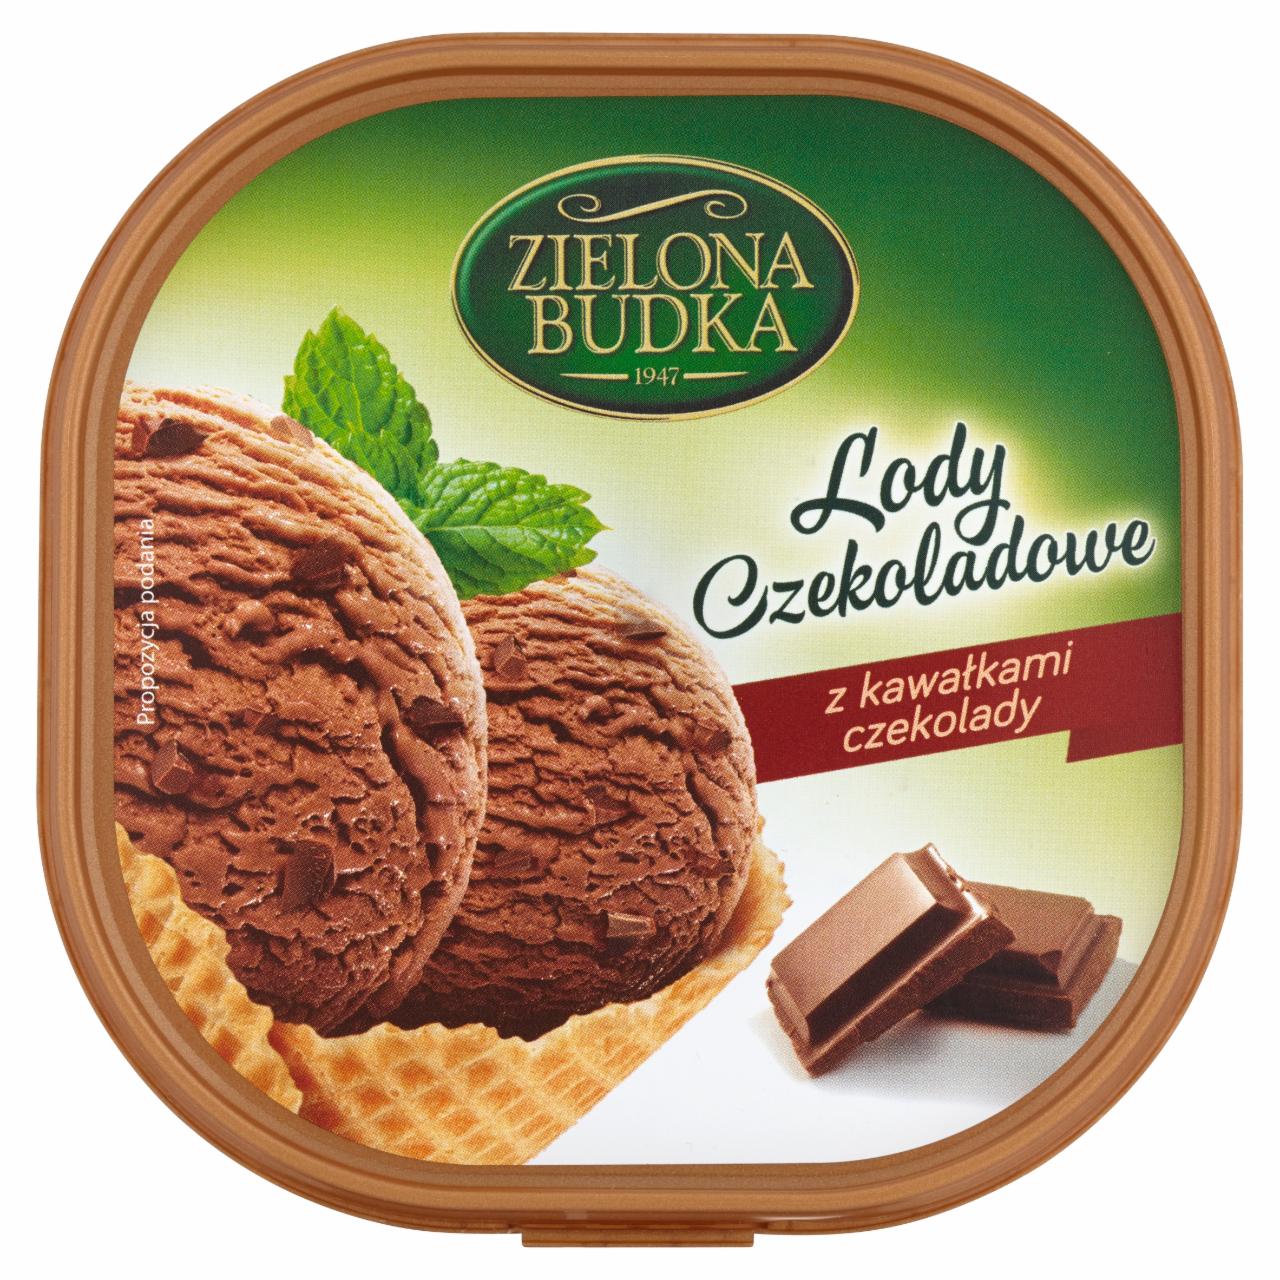 Zdjęcia - Zielona Budka Lody czekoladowe z kawałkami czekolady 500 ml